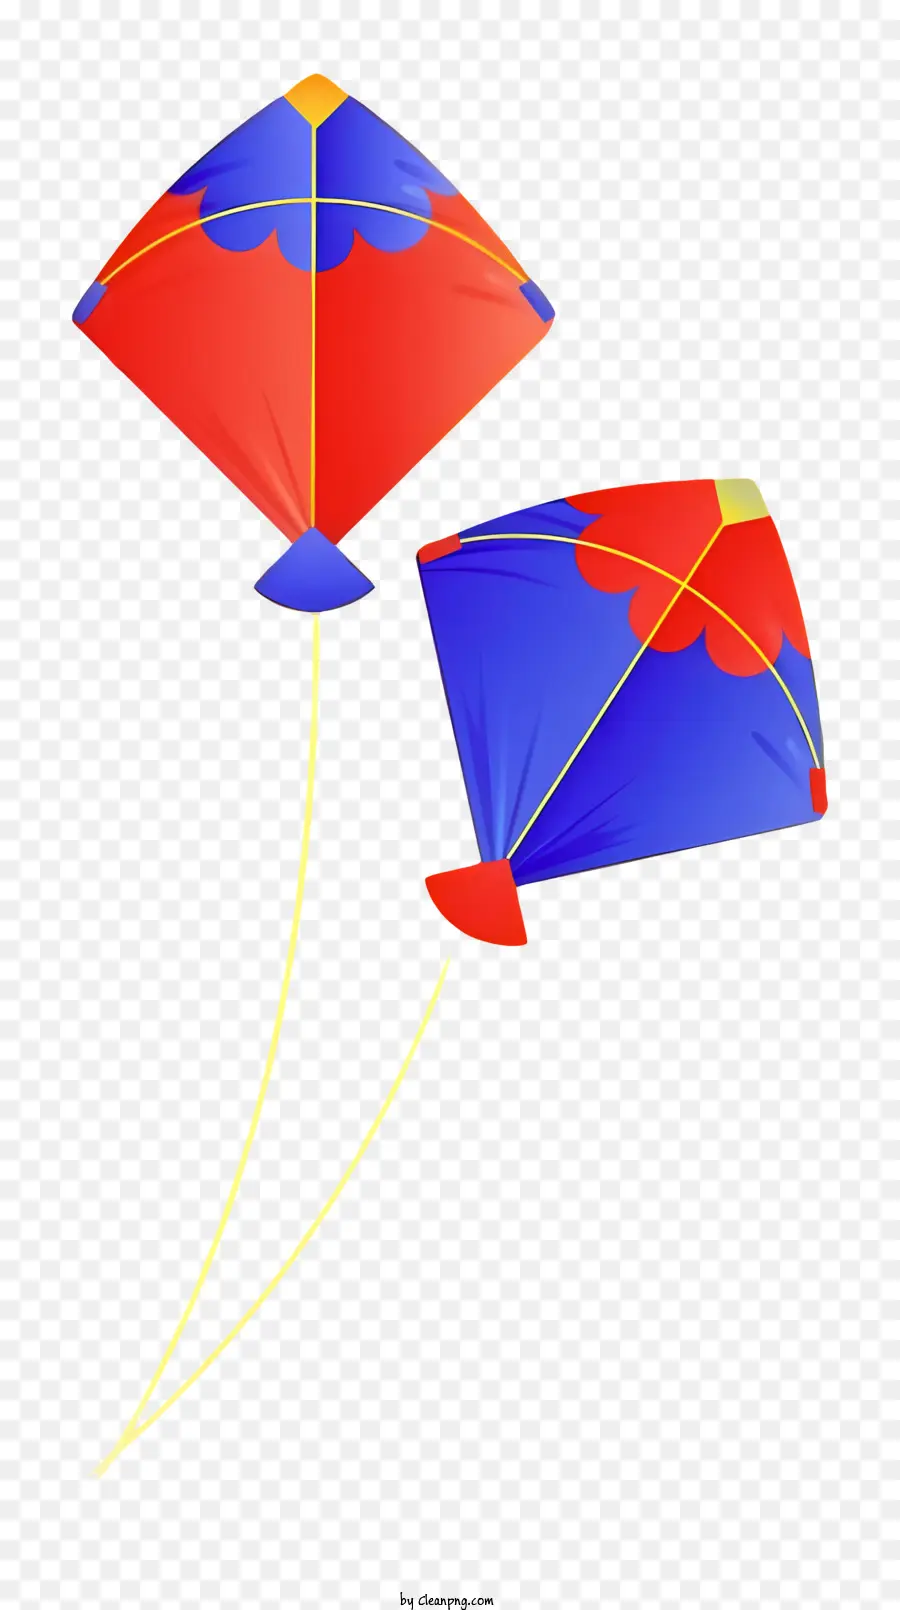 Kites rote und blaue Drachen gelbe Schnur fliegende Drachen miteinander verbunden Drachen - Zwei Drachen in Rot und Blau fliegen zusammen zusammen